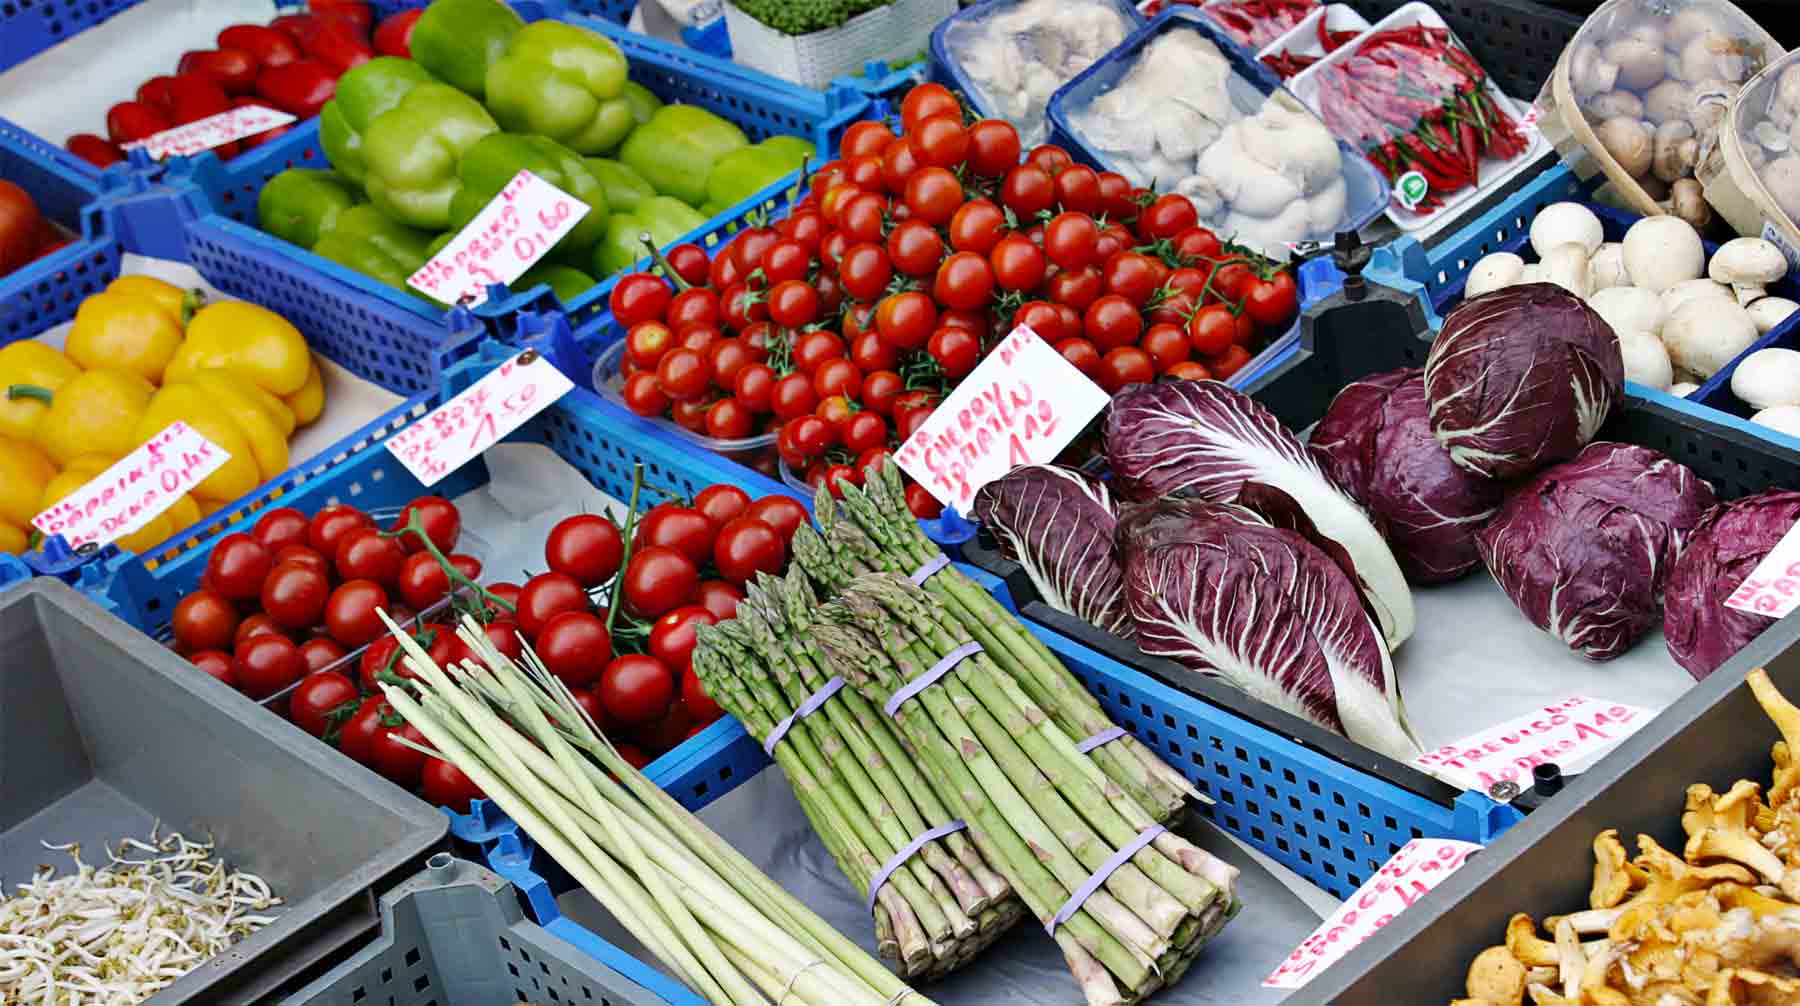 Каракас предложил Москве овощи, фрукты и кофе по рыночной цене, сообщил глава «Антиглобалистского движения РФ» undefined